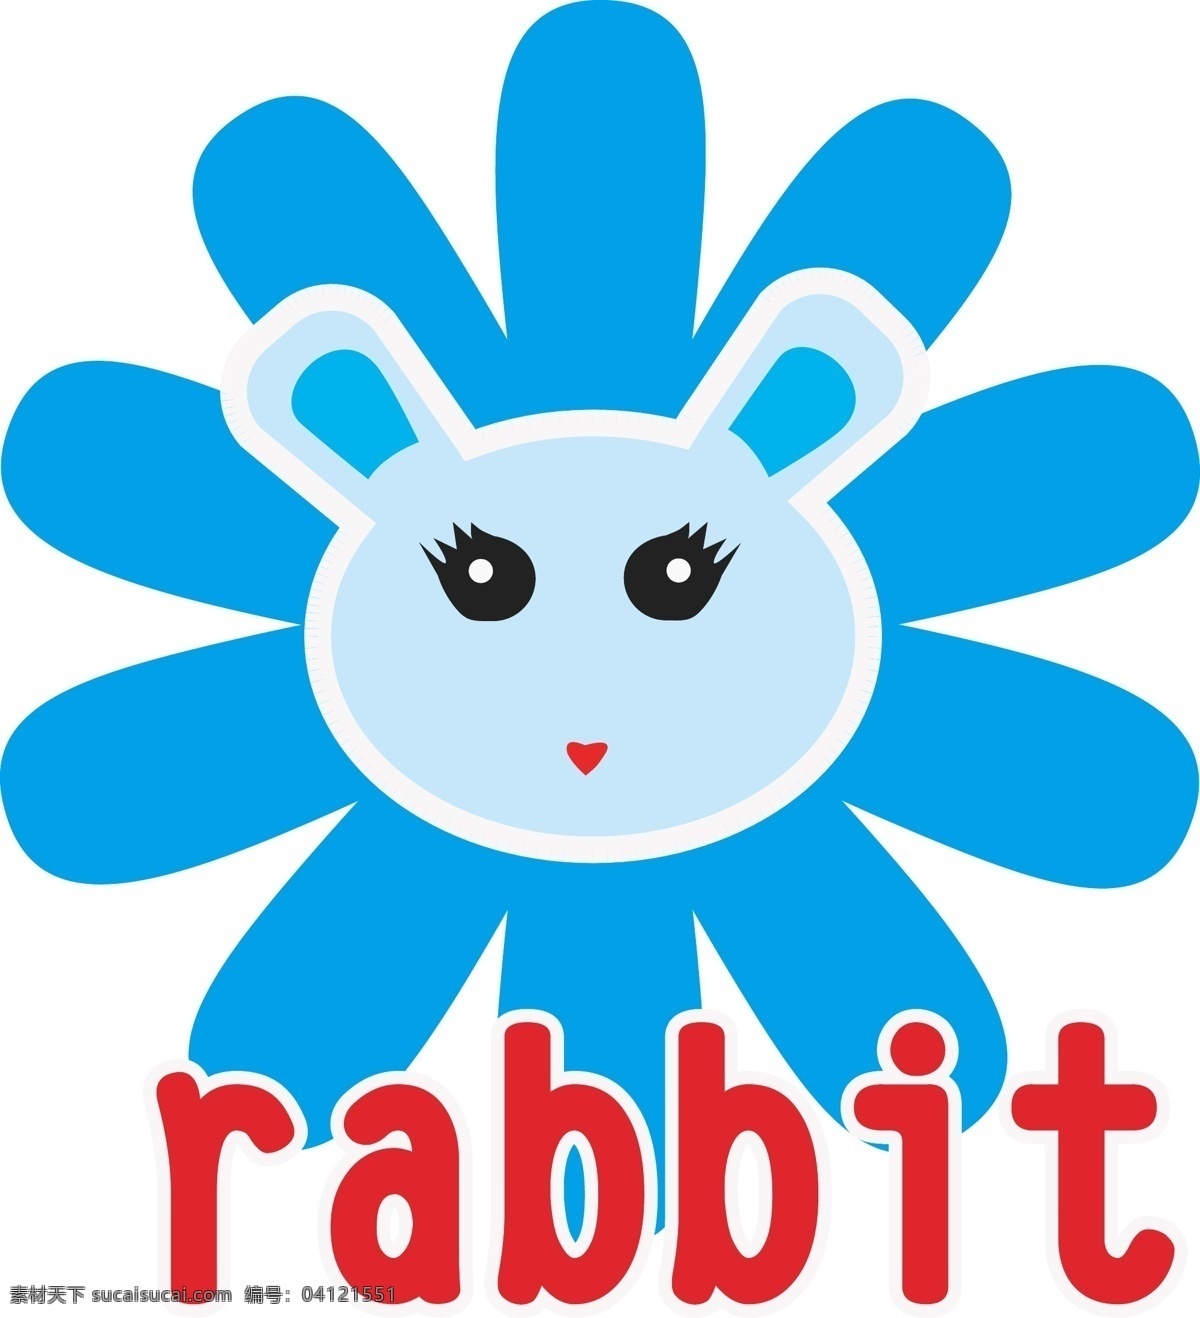 rabbit 兔子图标 矢量兔子 兔子插画 蓝色兔子 矢量素材